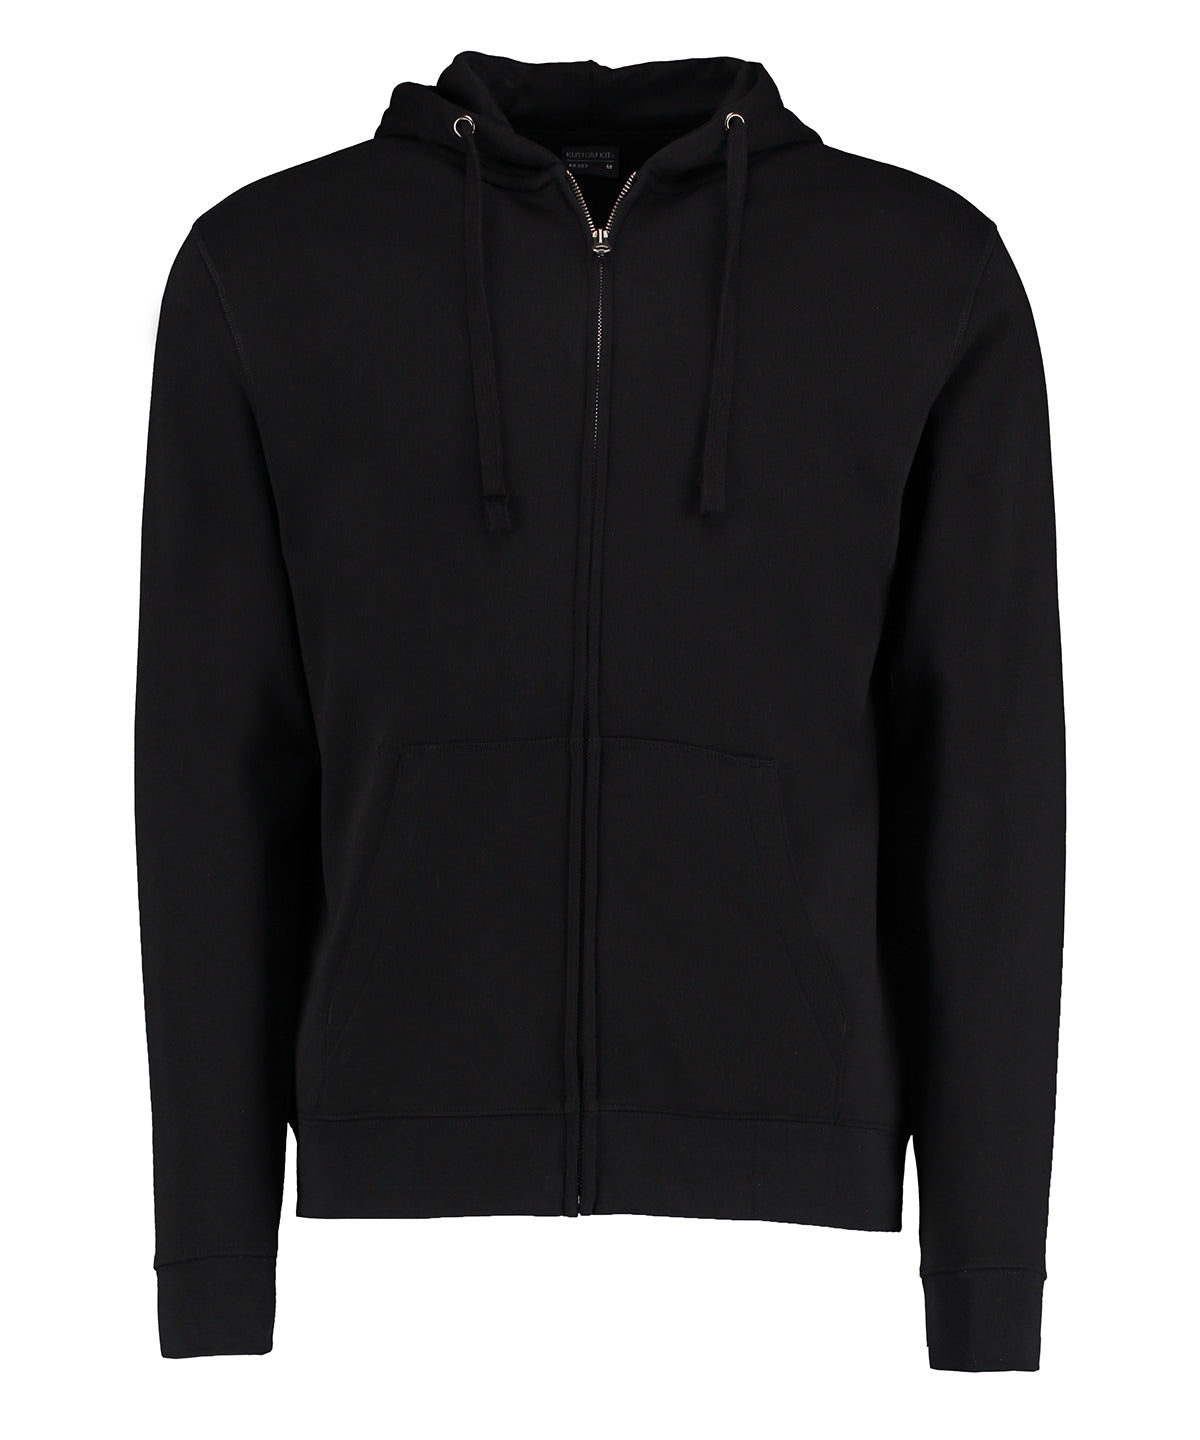 Kustom Kit Klassic hooded zipped jacket Superwash 60° long sleeve